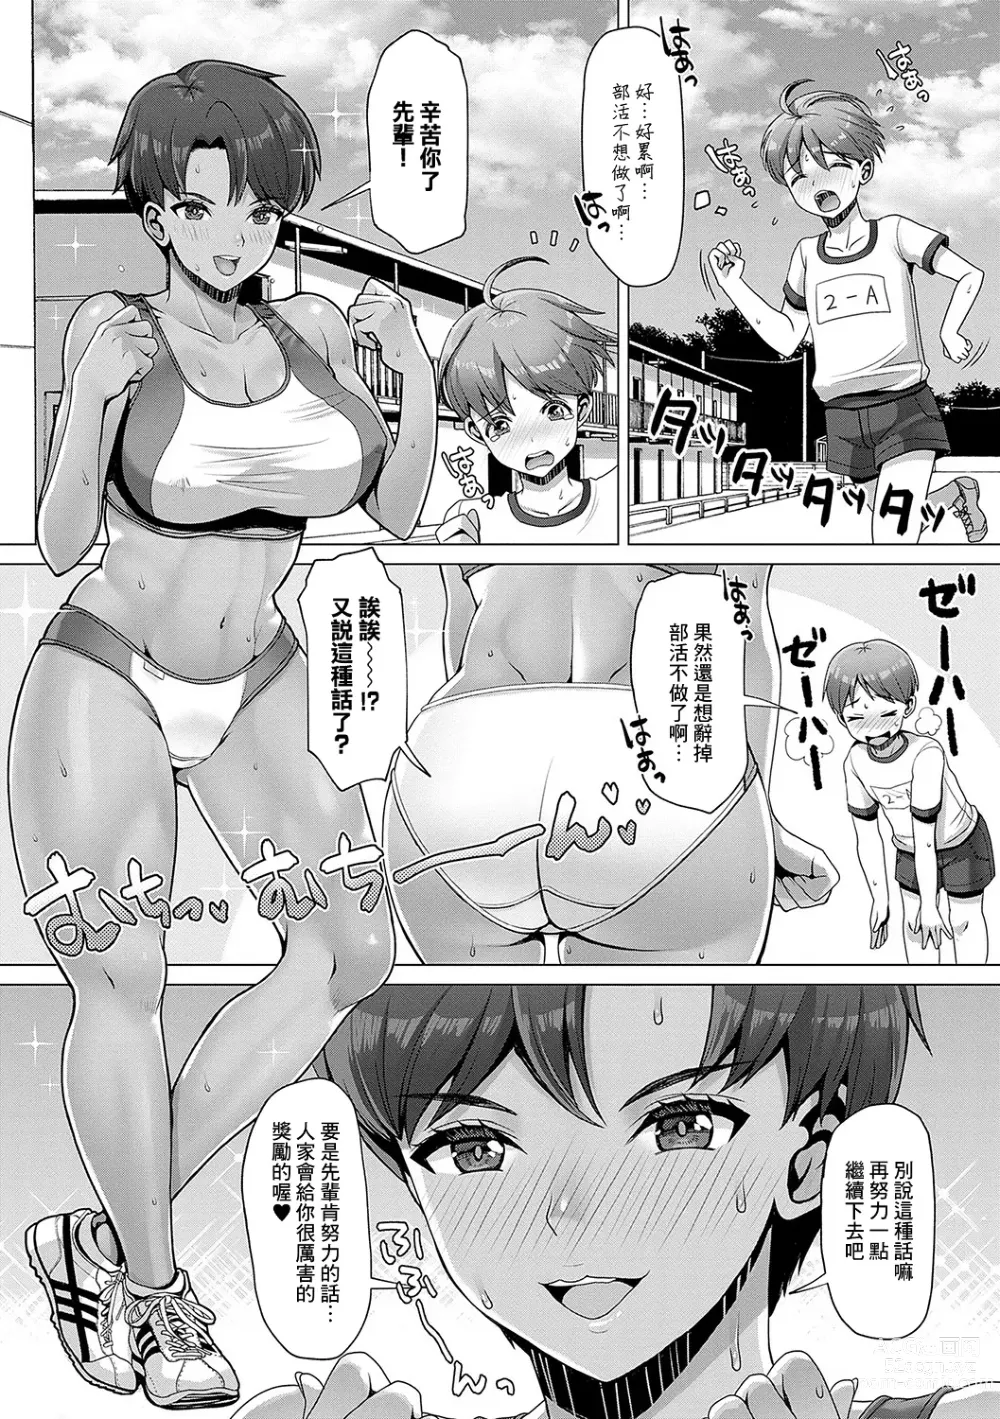 Page 11 of manga Amayakashi Gakuen no Amayakashi Gakuen SEIkatsu ♥